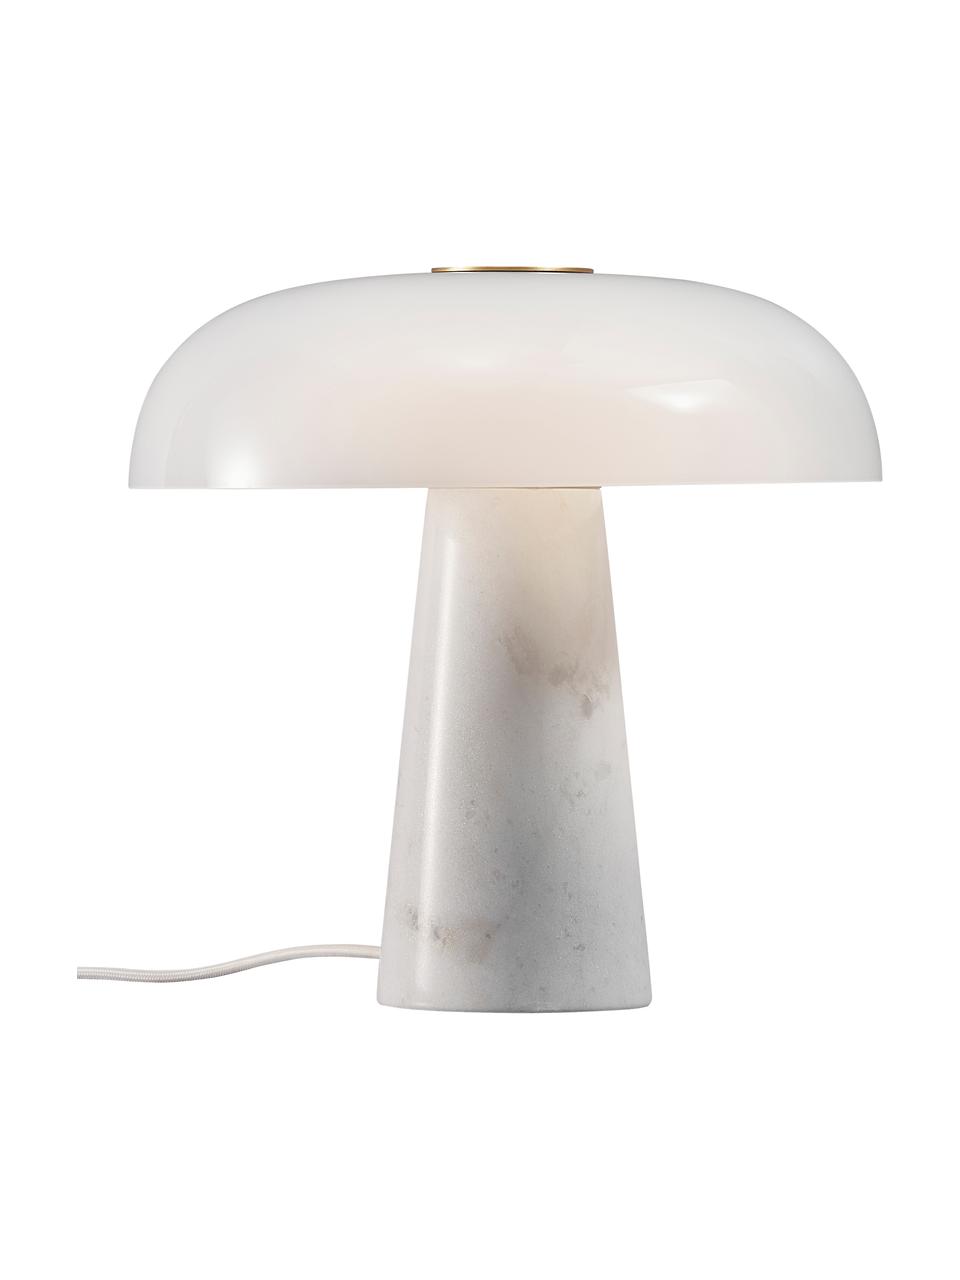 Tafellamp Glossy met marmeren voet, Lampenkap: opaalglas, Lampvoet: marmer, Wit, Ø 32 x H 32 cm